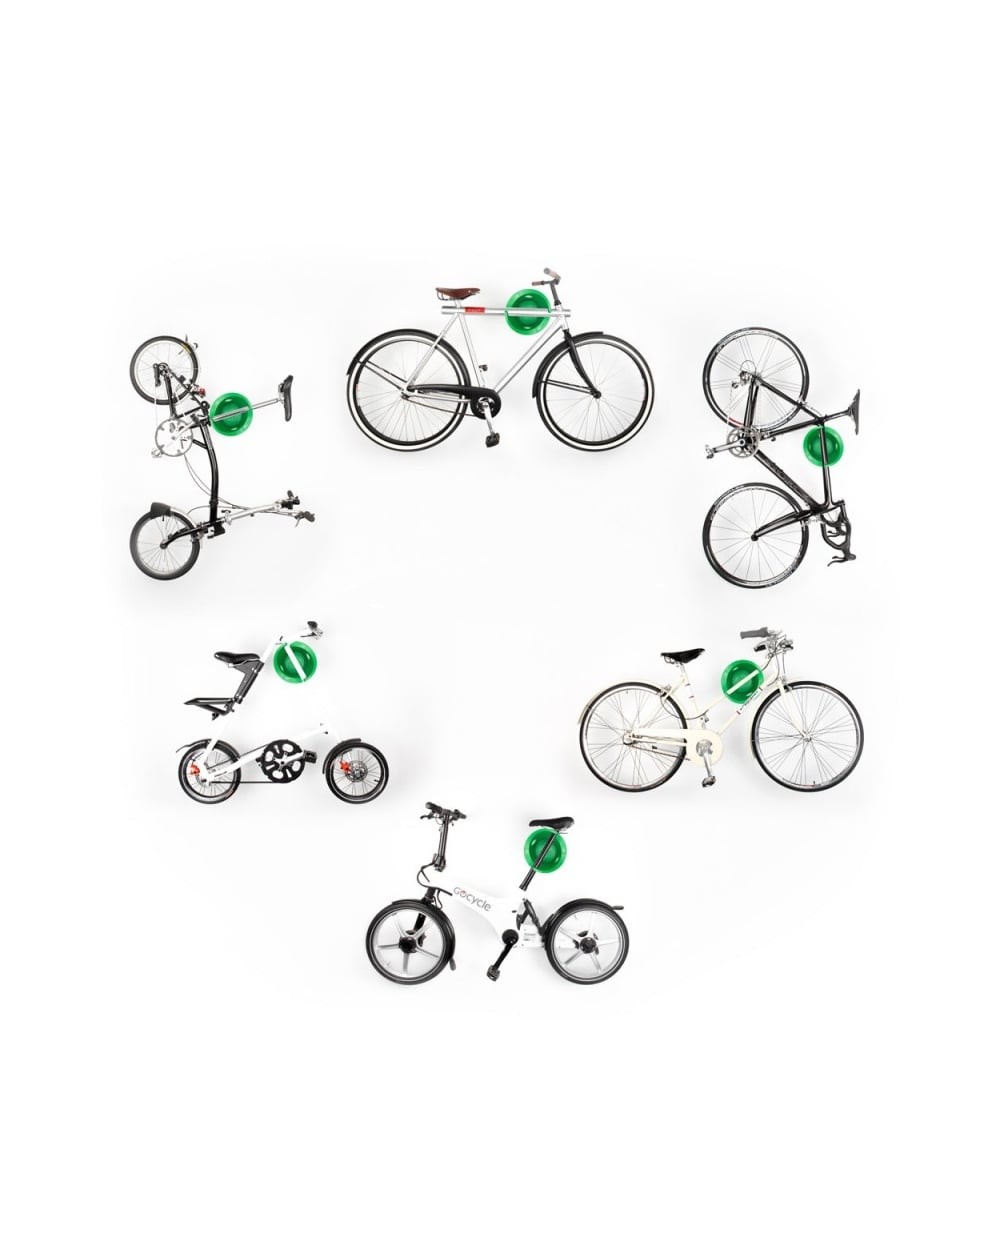 Les 10 accessoires indispensables pour un vélo électrique – Le Cycle Moderne